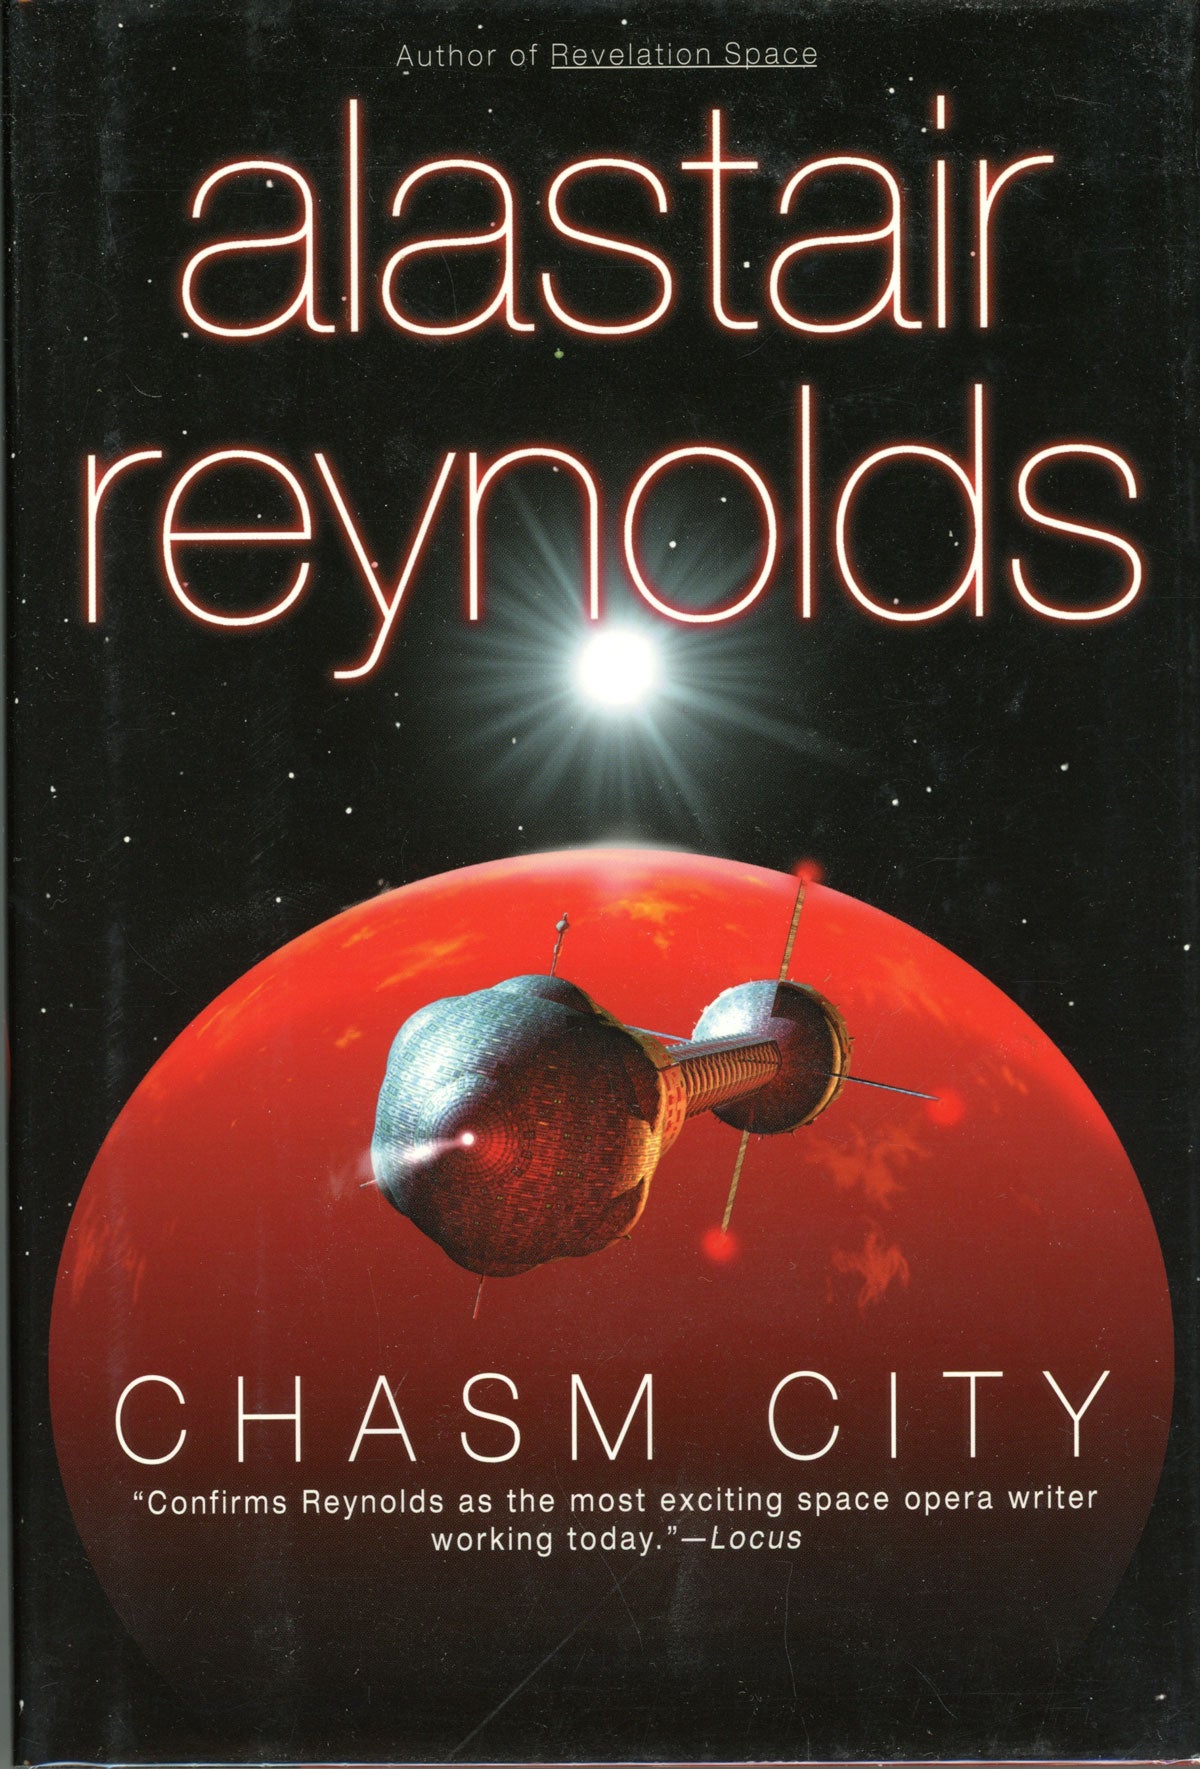 CHASM CITY by Alastair Reynolds on L. W. Currey, Inc